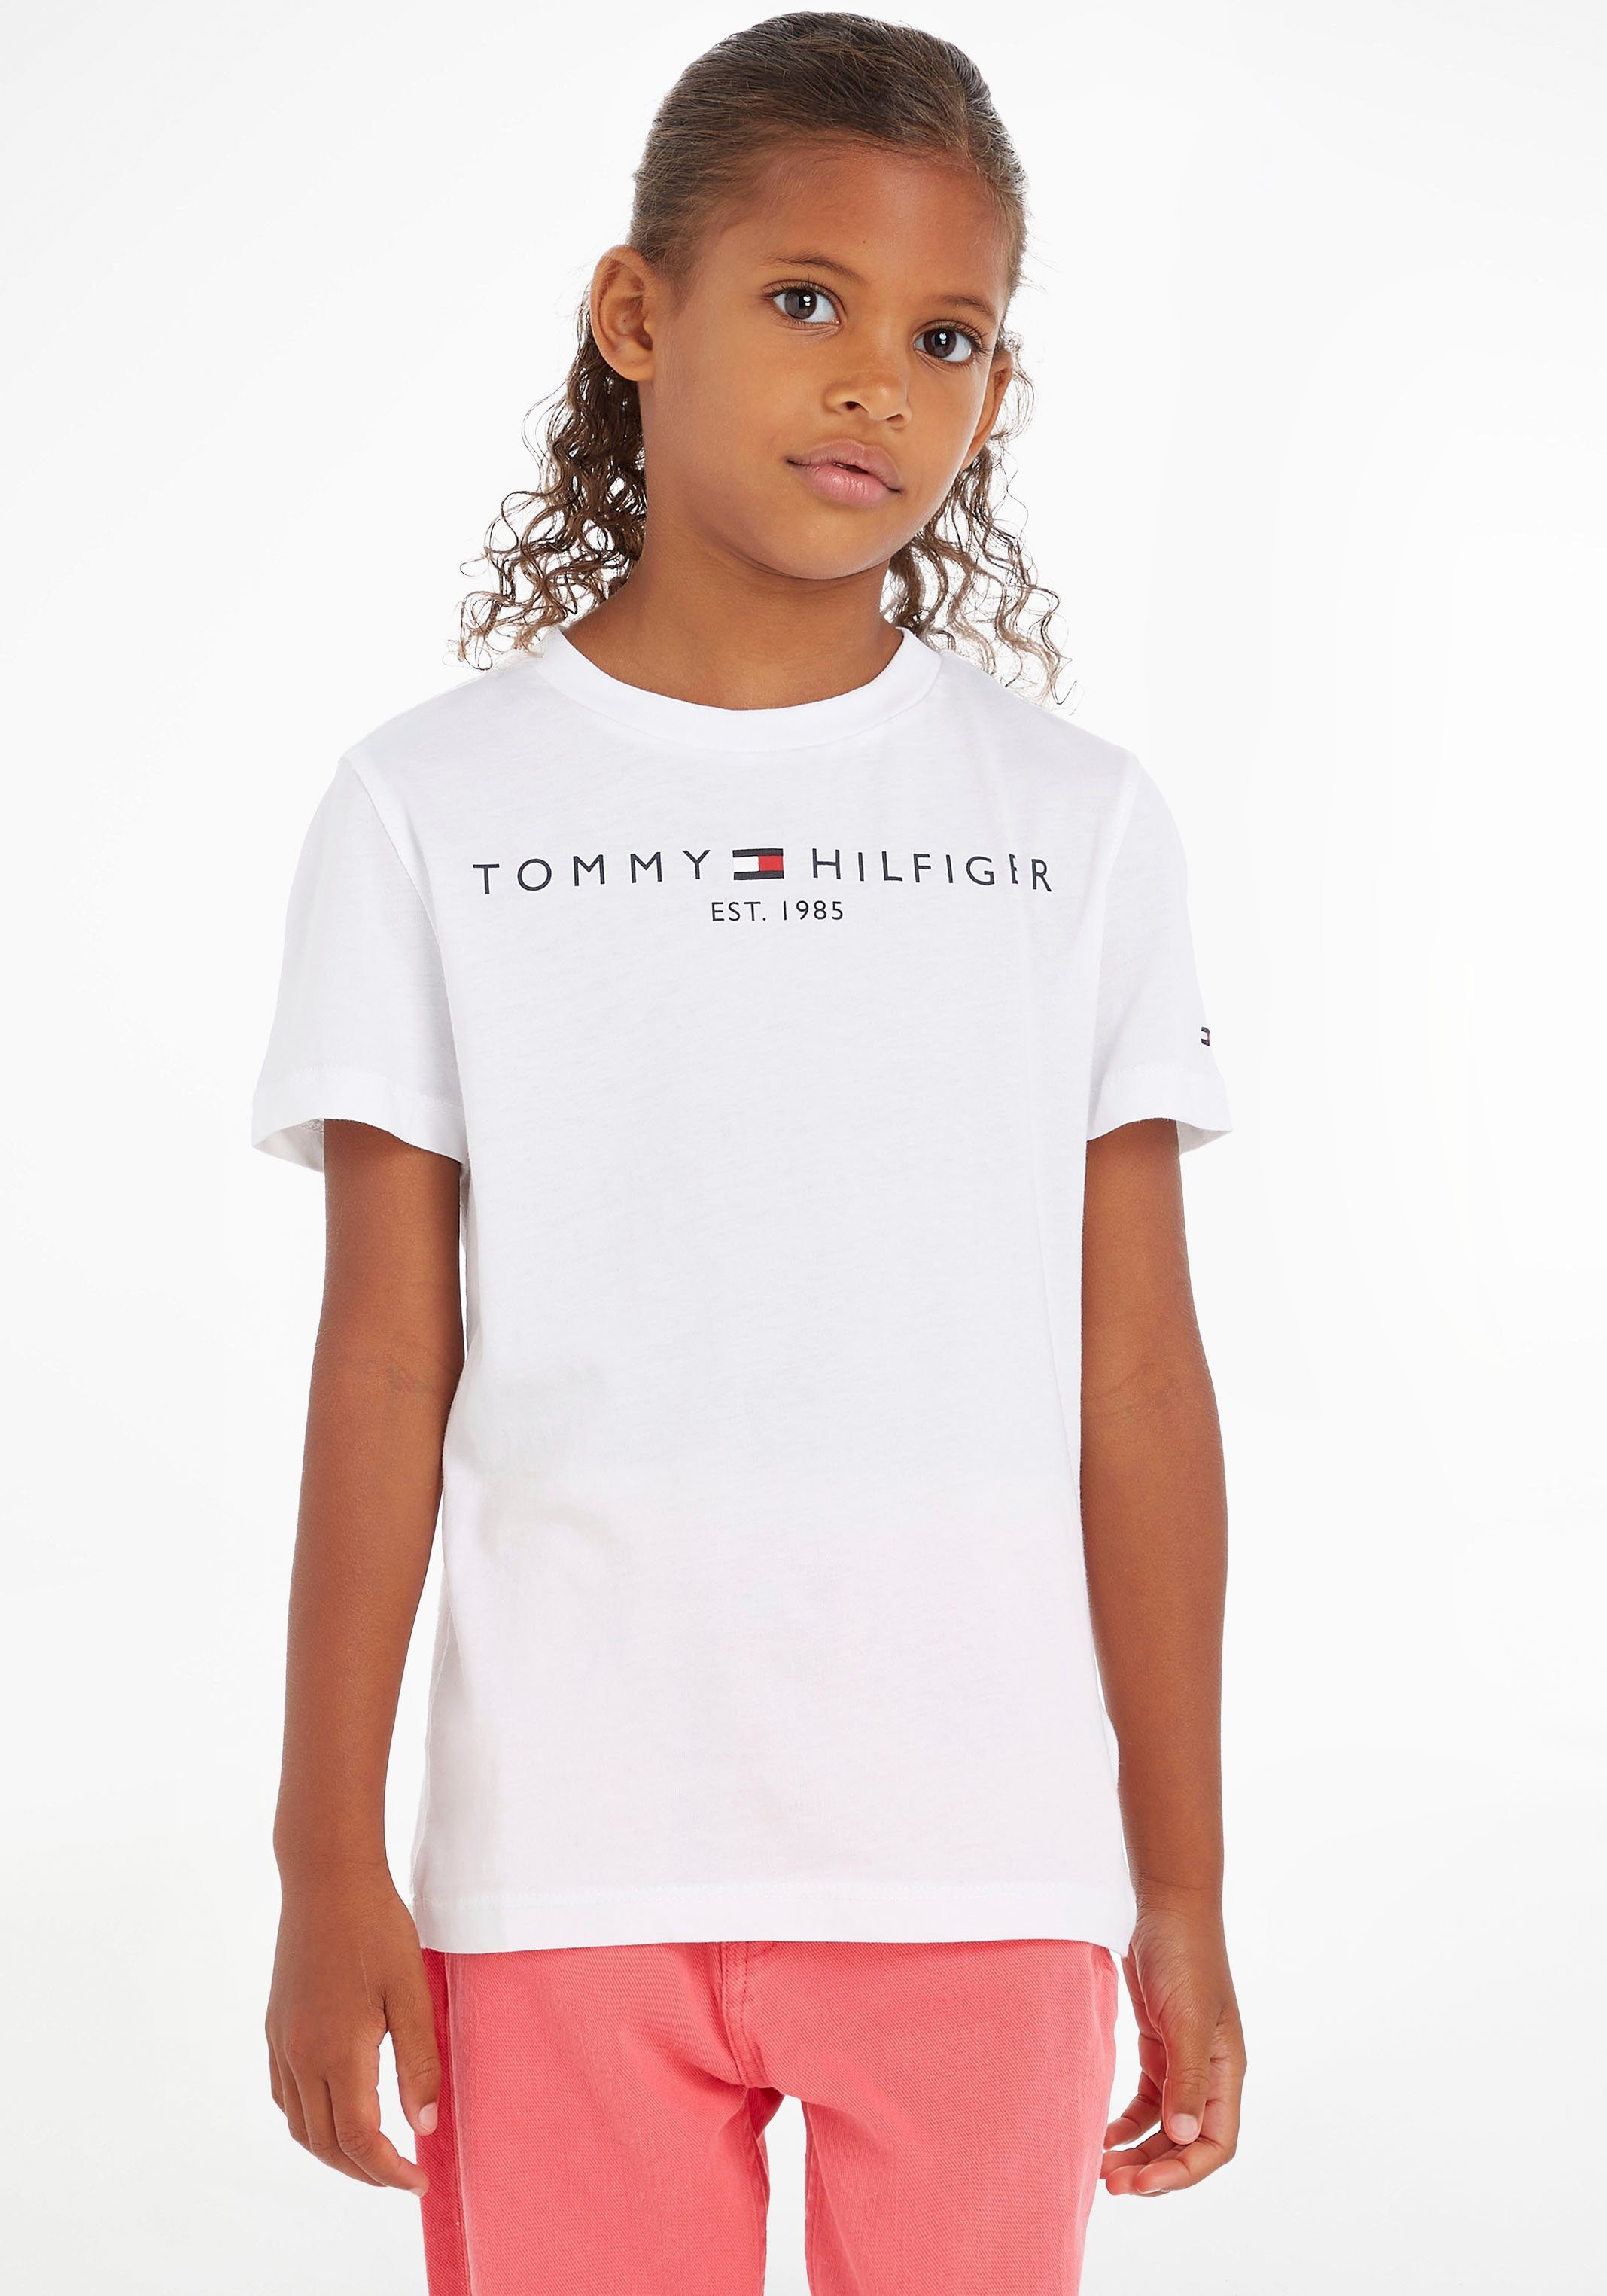 ungeheuer Tommy Hilfiger Kids MiniMe,für Kinder T-Shirt Junior Mädchen ESSENTIAL Jungen und TEE